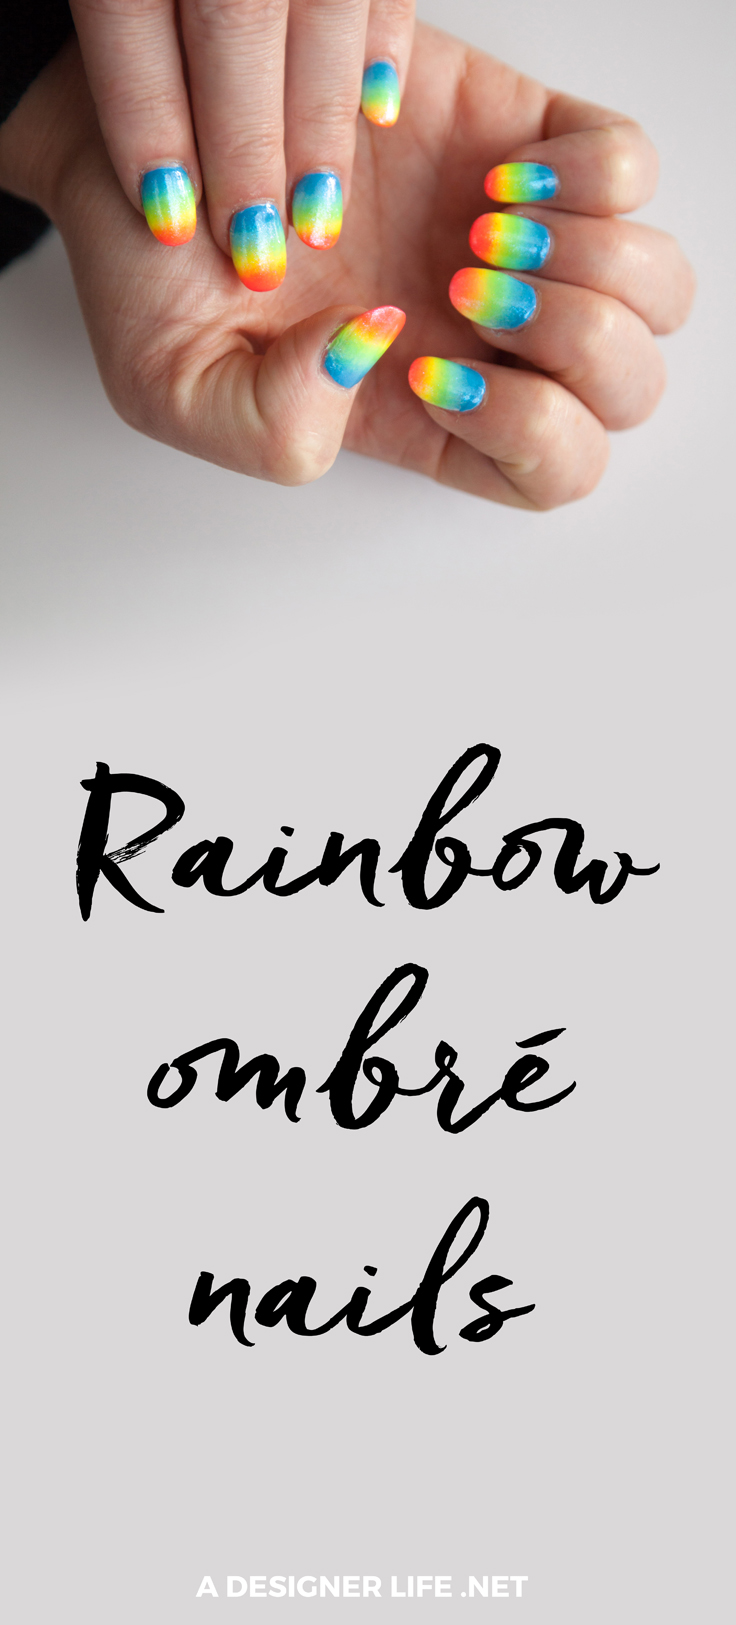 Super fun rainbow ombre nails